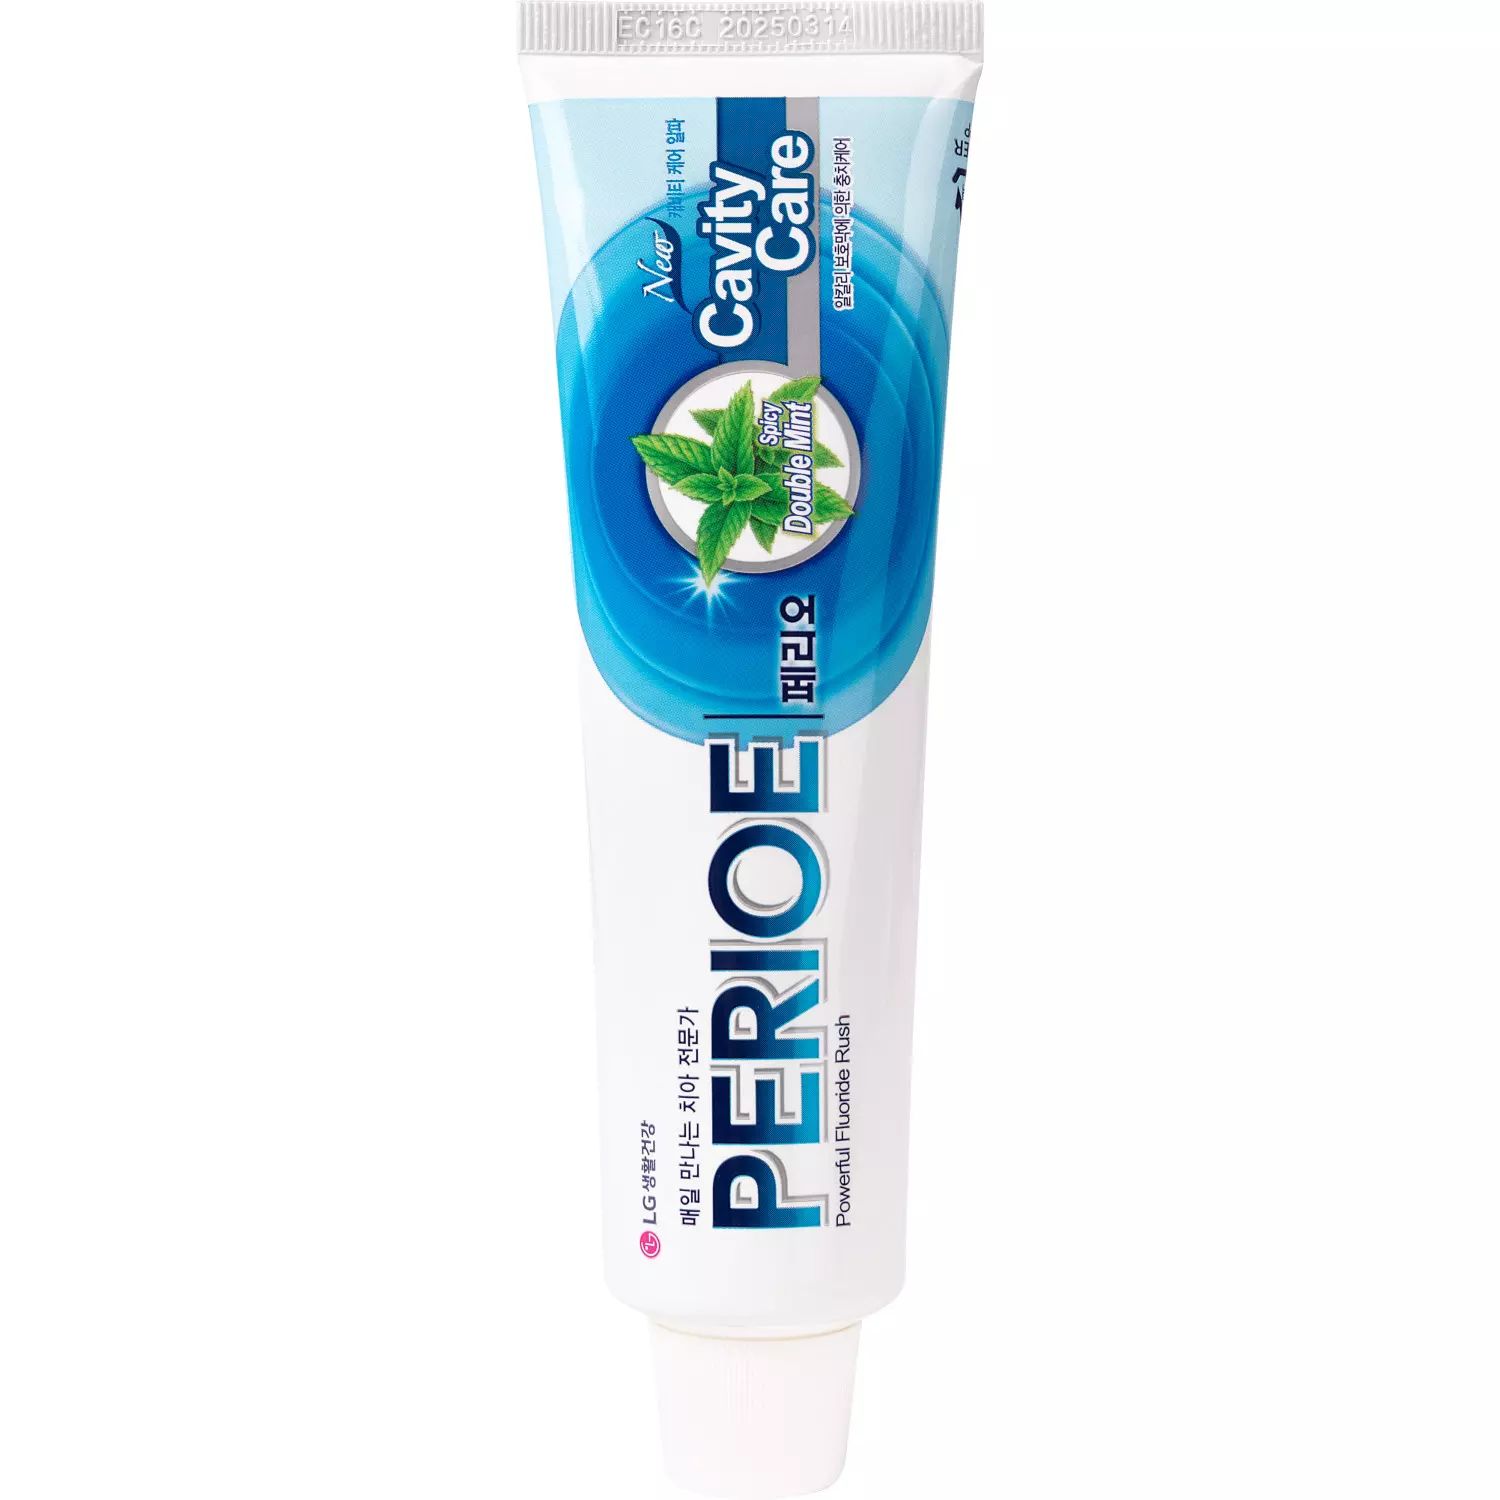 Зубная паста PERIOE CAVITY CARE ALPHA для эффективной профилактики кариеса 160 г зубная паста perioe breath care alpha освежающая дыхание 160 г 2 шт